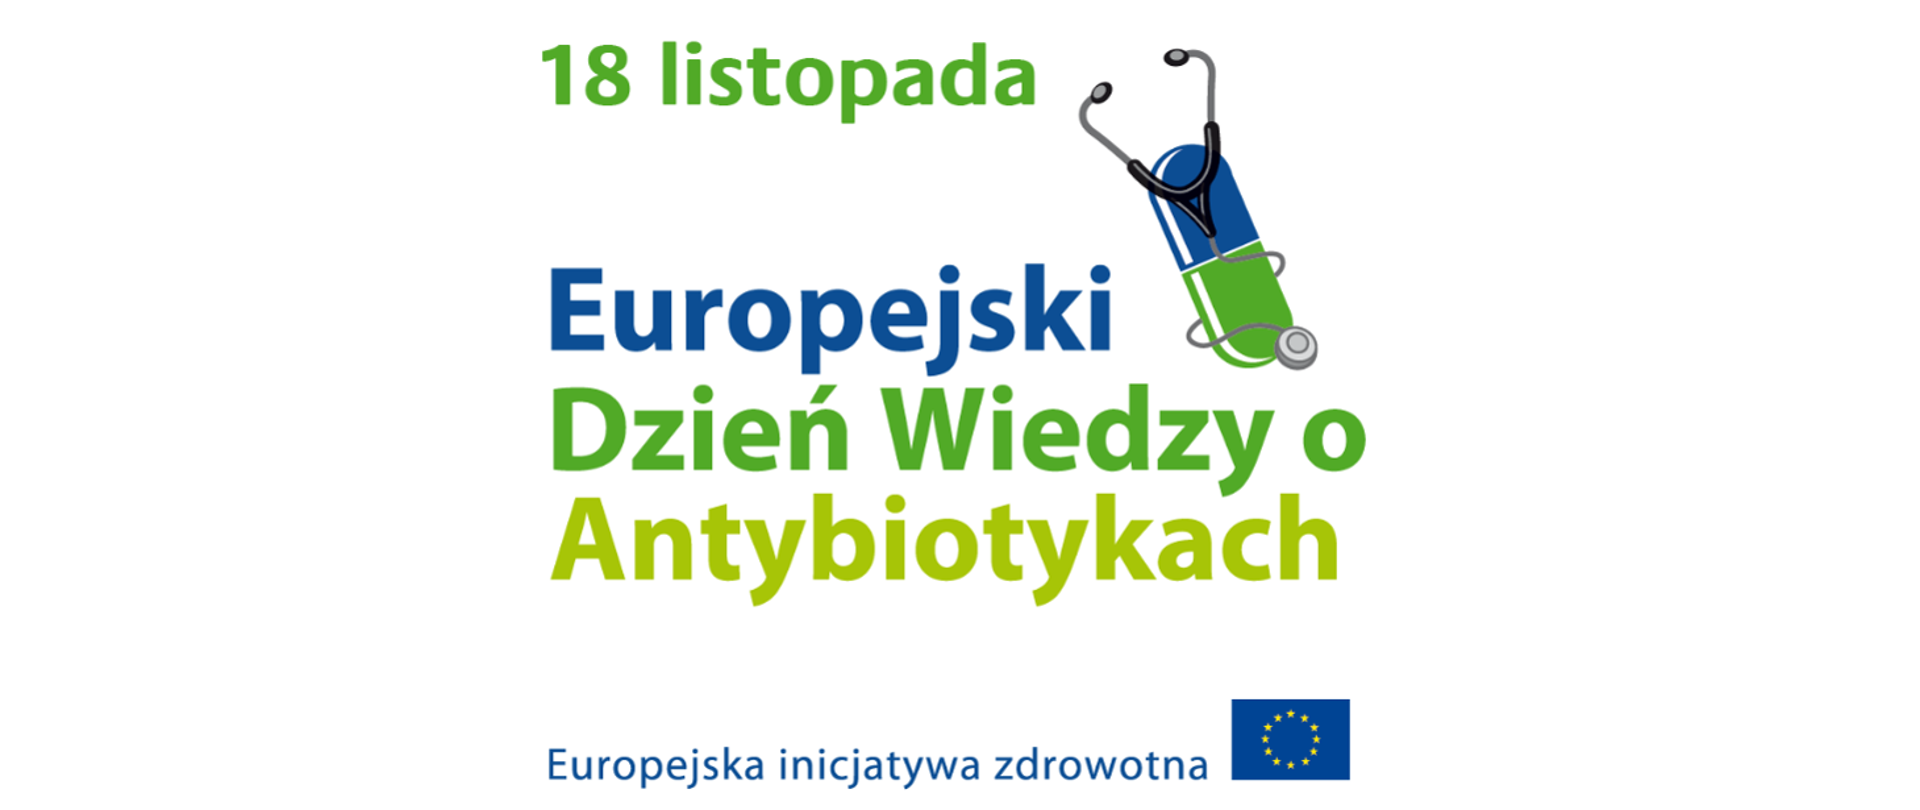 Centralnie rozmieszczony napis: 18 listopada Europejski Dzień Wiedzy o Antybiotykach Europejska inicjatywa zdrowia. Napis zakończony flagą Unii Europejskiej. Z prawej strony umieszczona jest niebieskozielona pigułka z owiniętym wokół siebie stetoskopem.